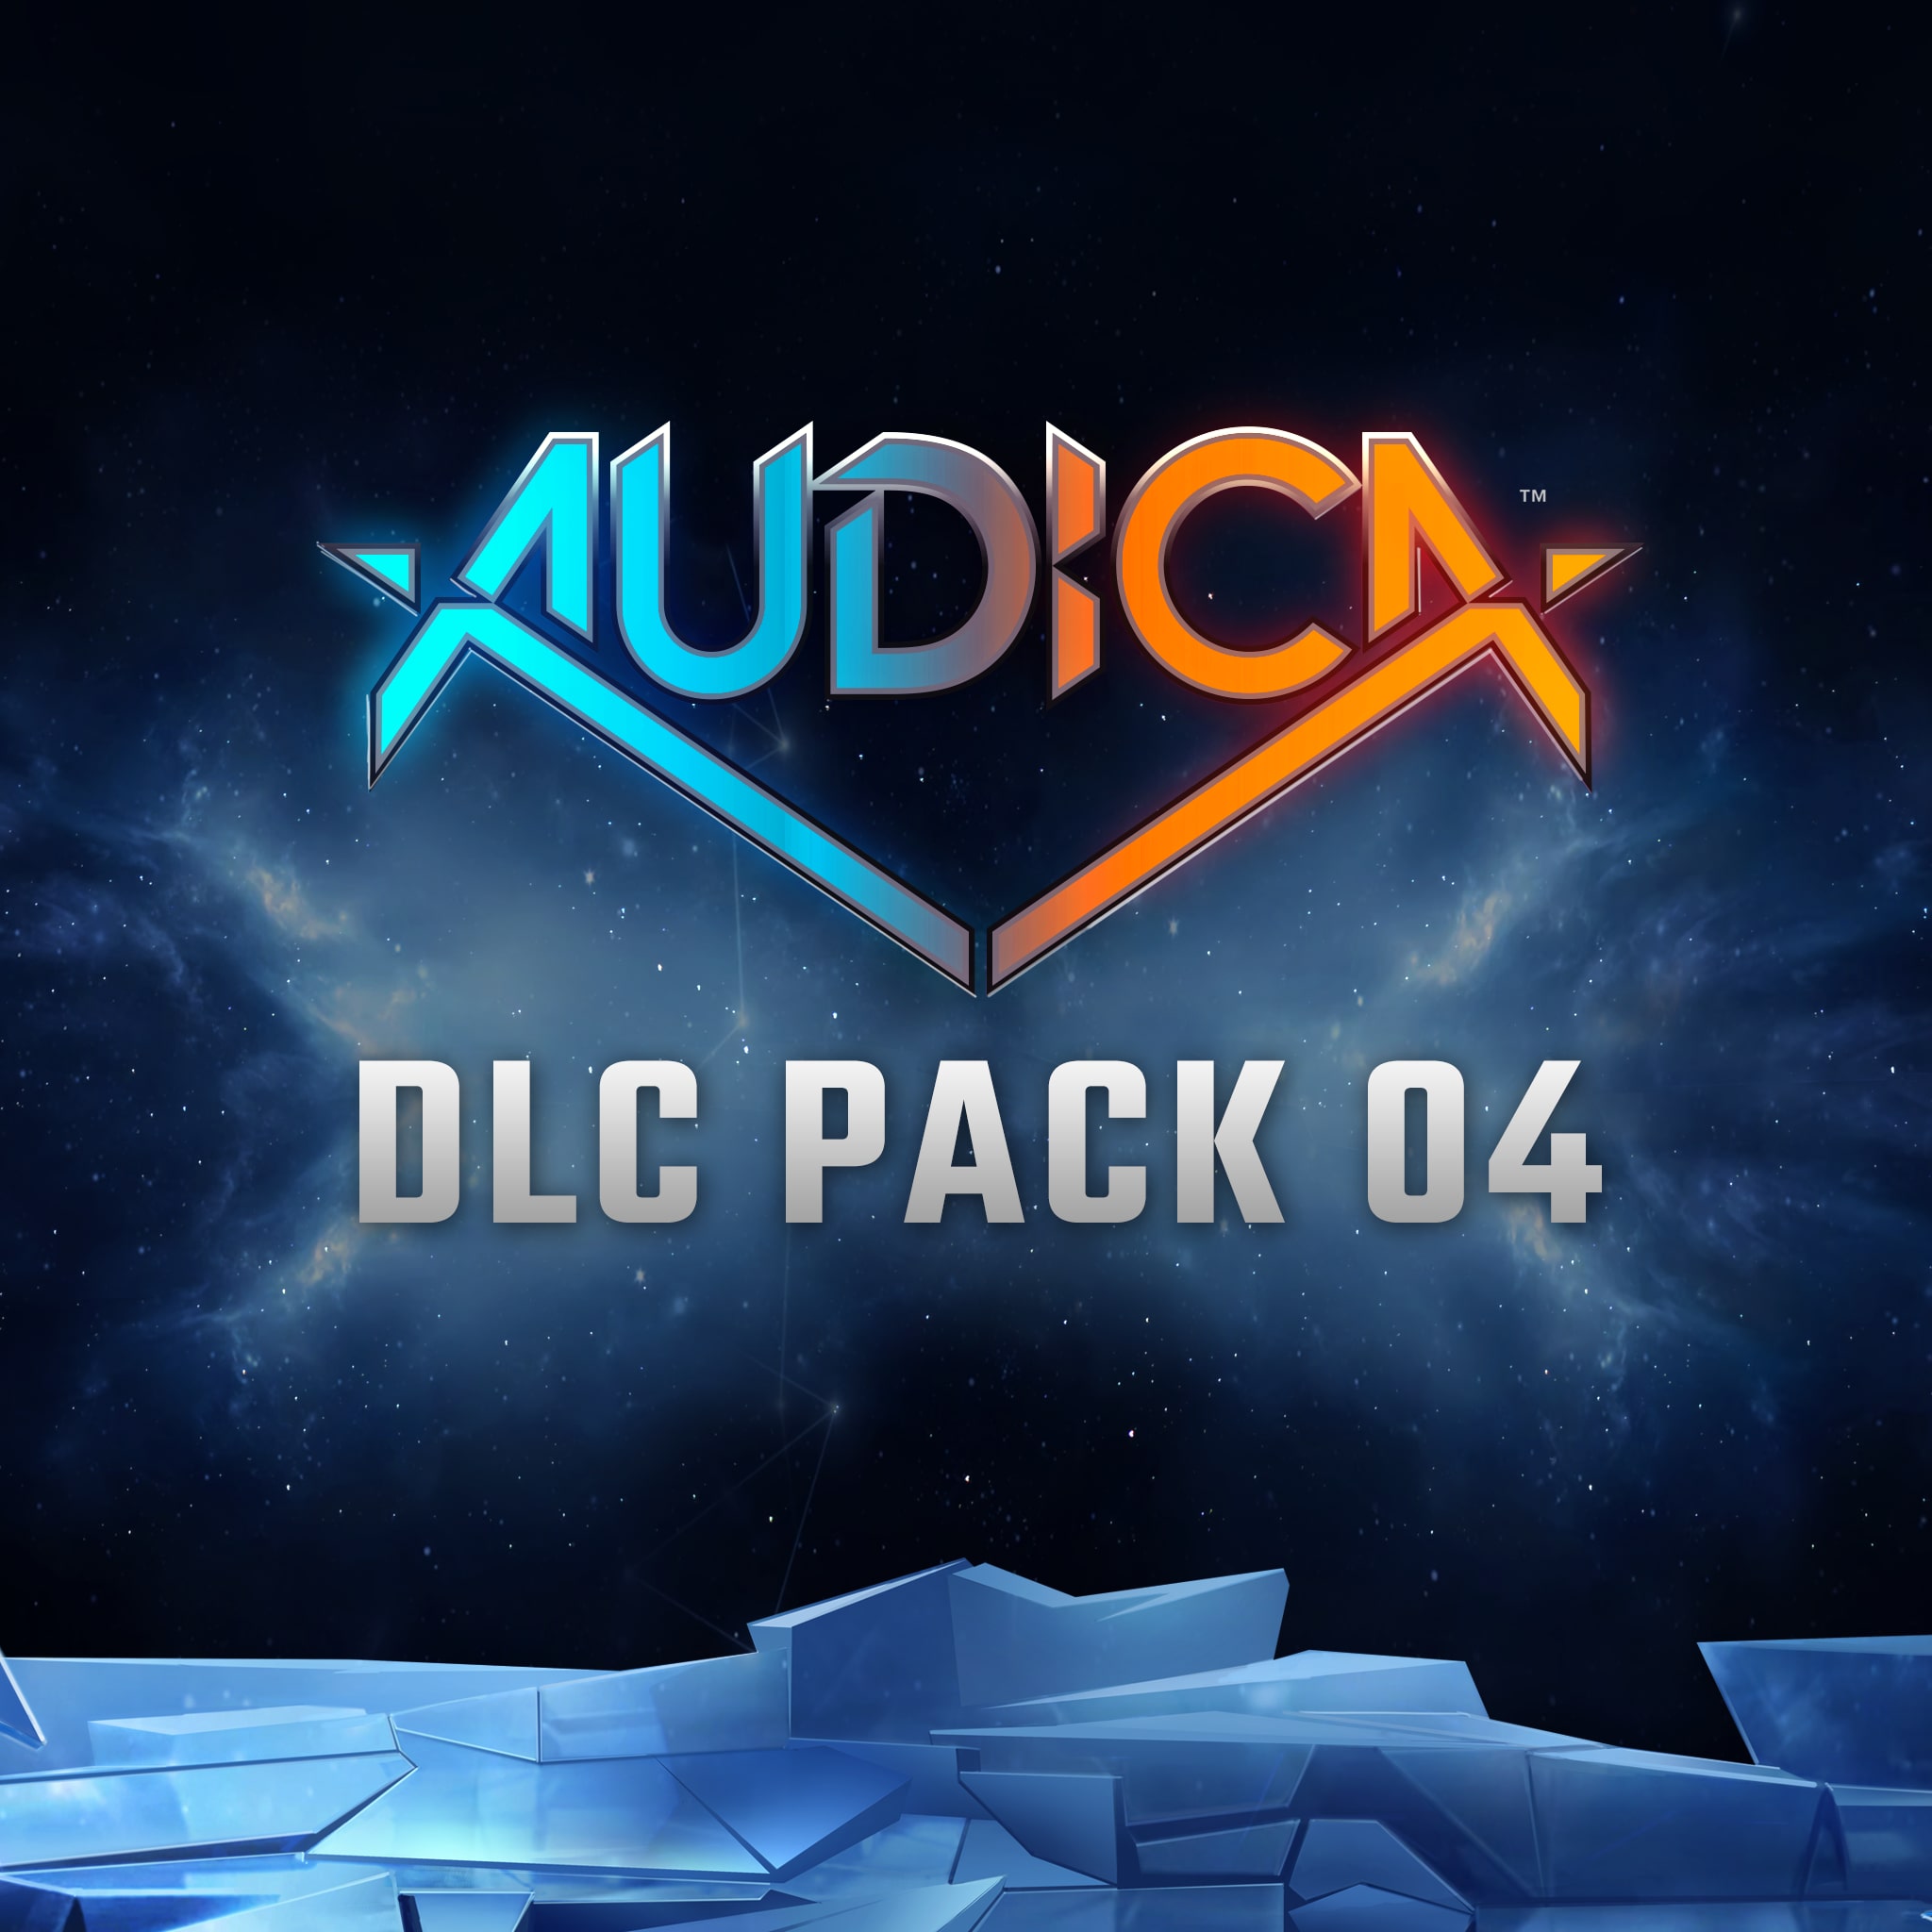 AUDICA™ DLC Pack 04